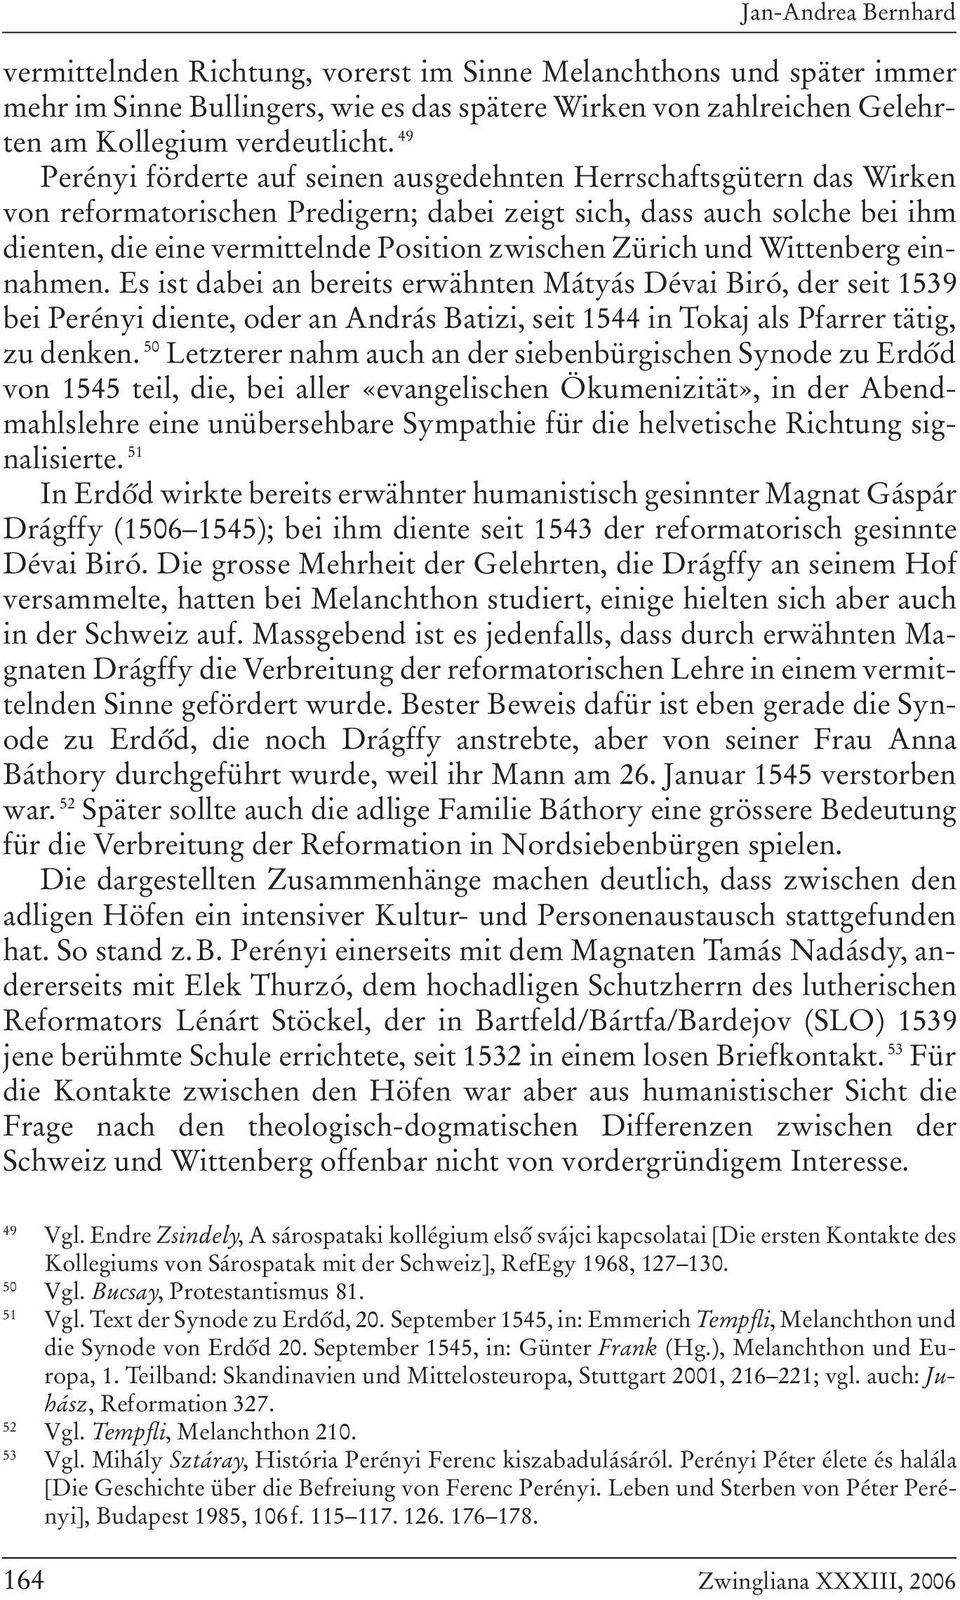 Zürich und Wittenberg einnahmen. Es ist dabei an bereits erwähnten Mátyás Dévai Biró, der seit 1539 bei Perényi diente, oder an András Batizi, seit 1544 in Tokaj als Pfarrer tätig, zu denken.